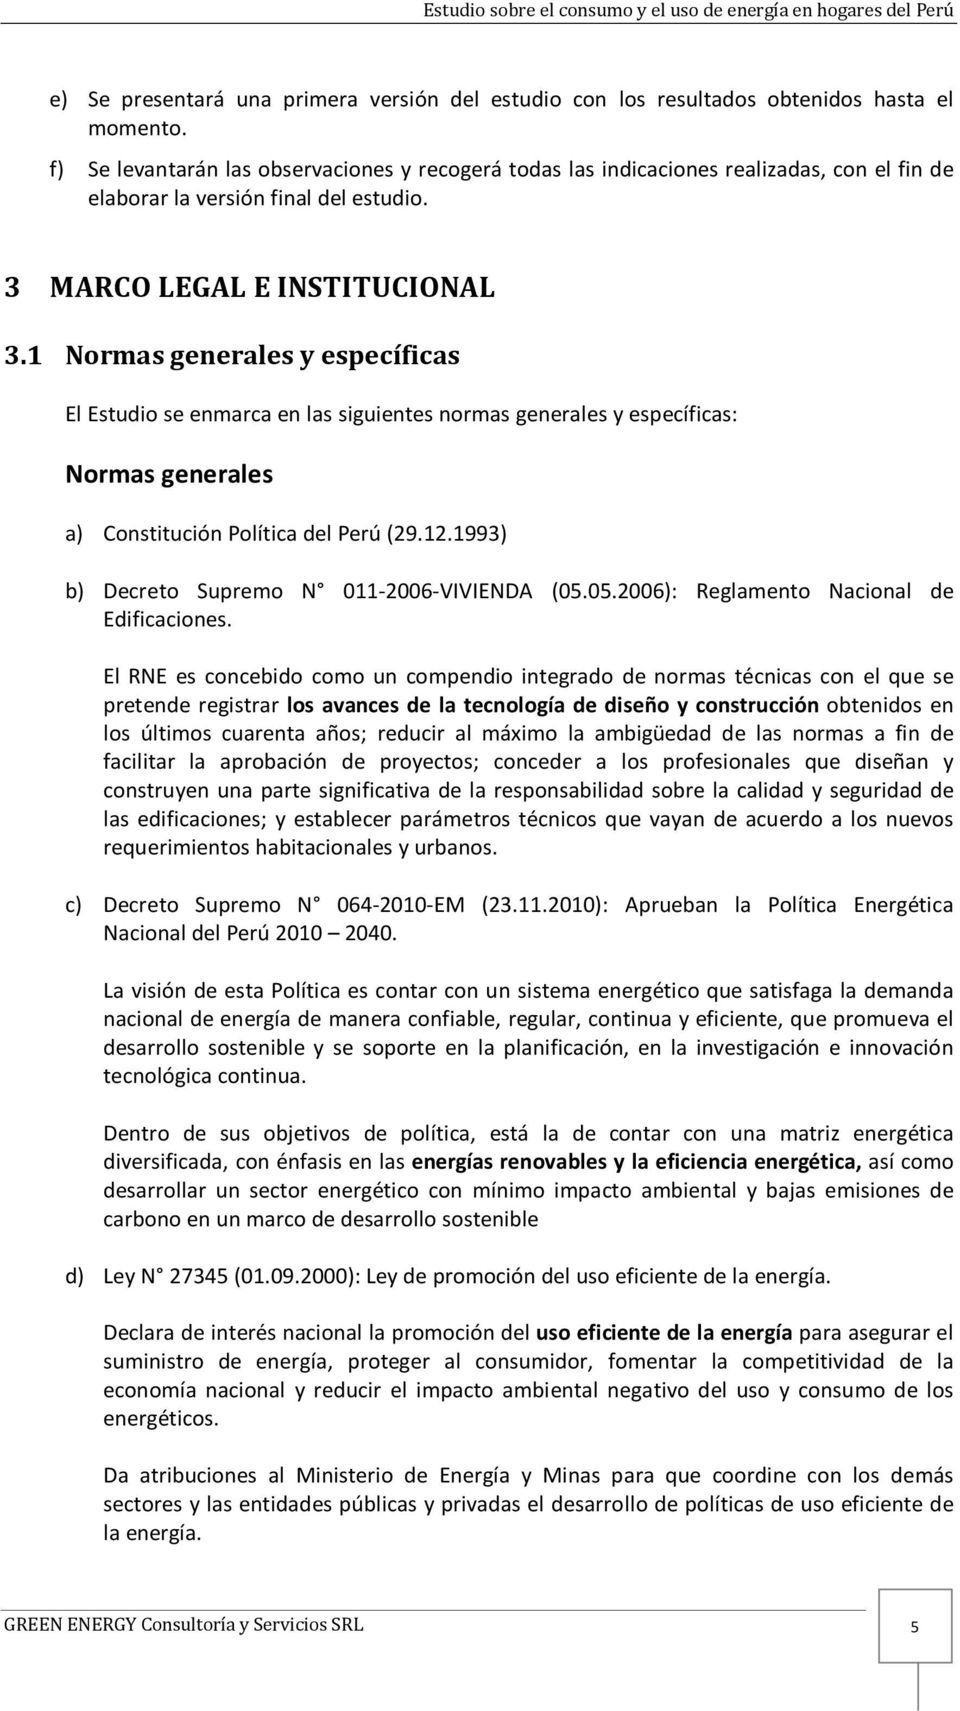 1 Normas generales y específicas El Estudio se enmarca en las siguientes normas generales y específicas: Normas generales a) Constitución Política del Perú (29.12.